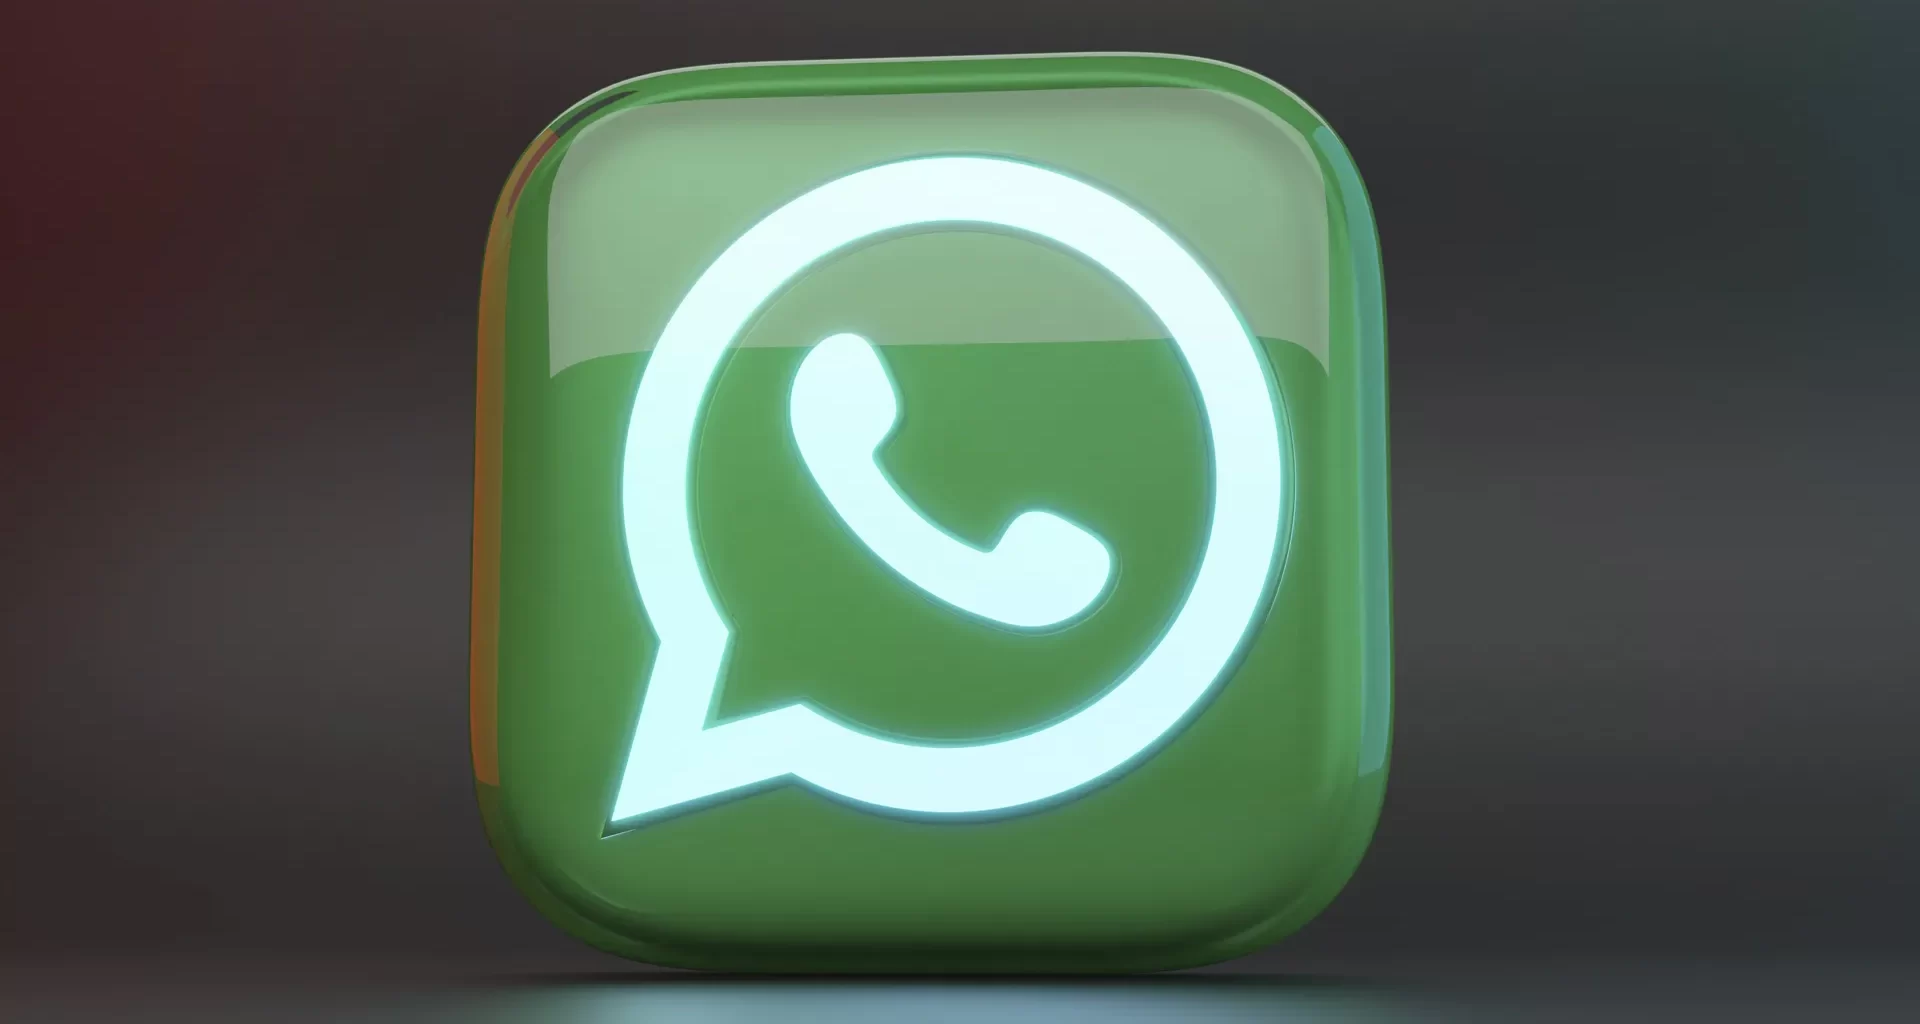 WhatsApp: Llega la esperada edición de mensajes